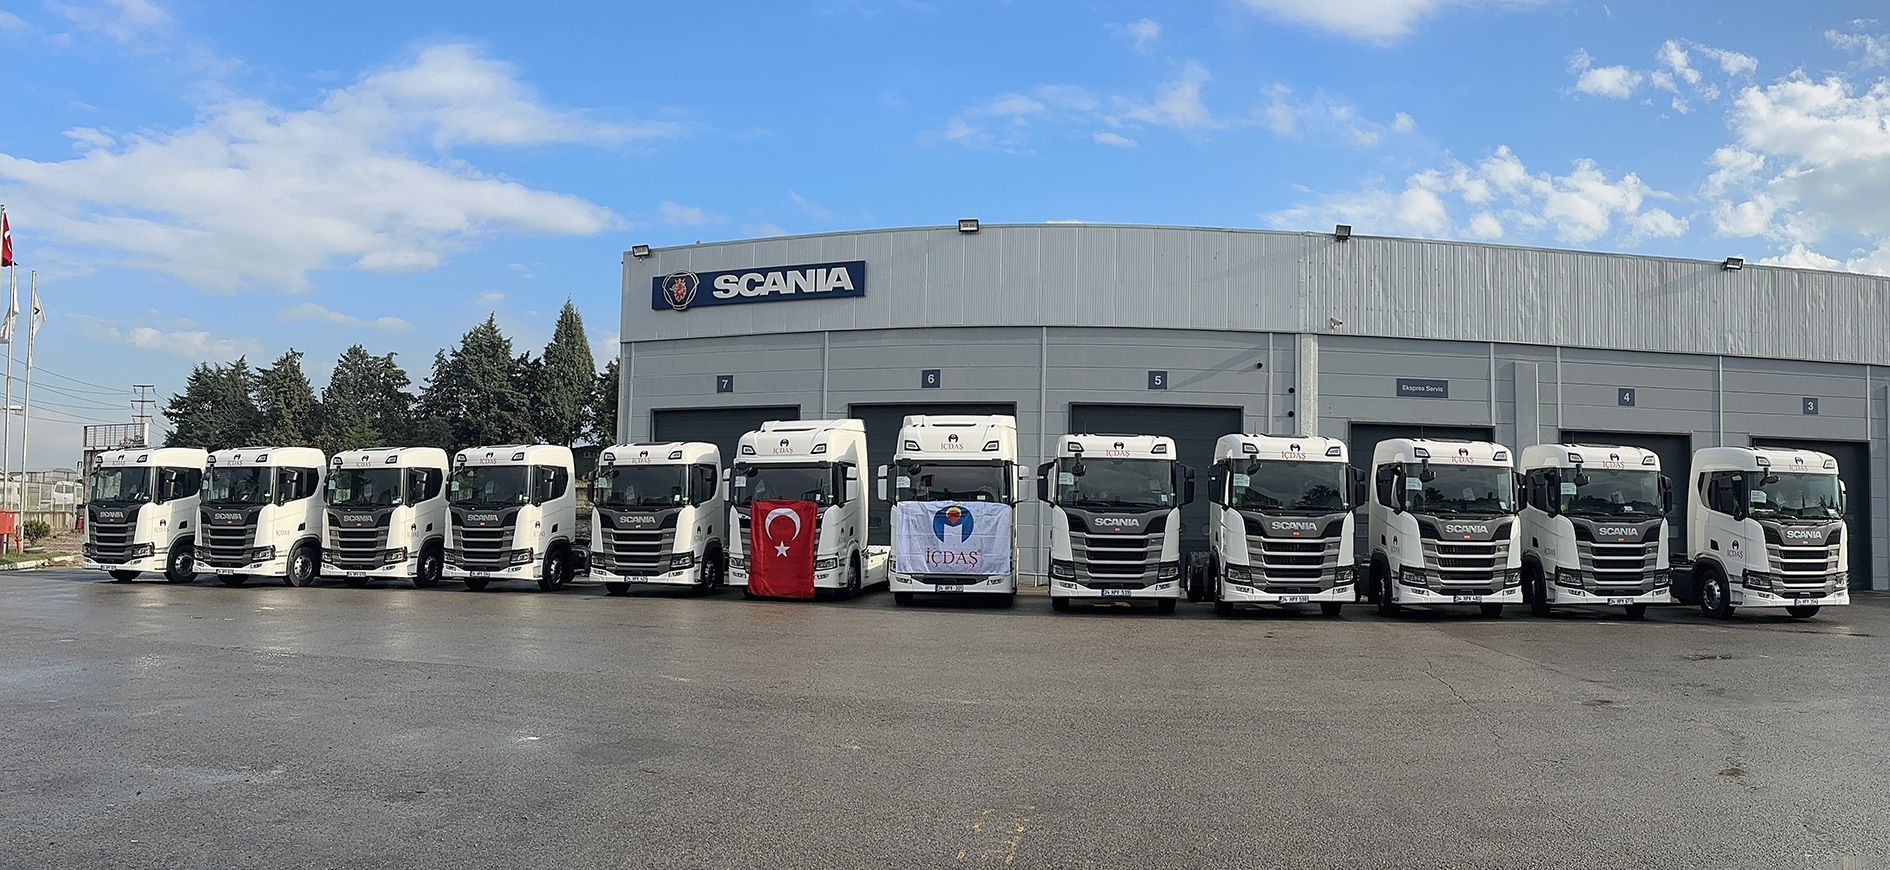 İÇDAŞ Grup Ulaştırma Filosuna 22 Adet Scania Aldı (1)